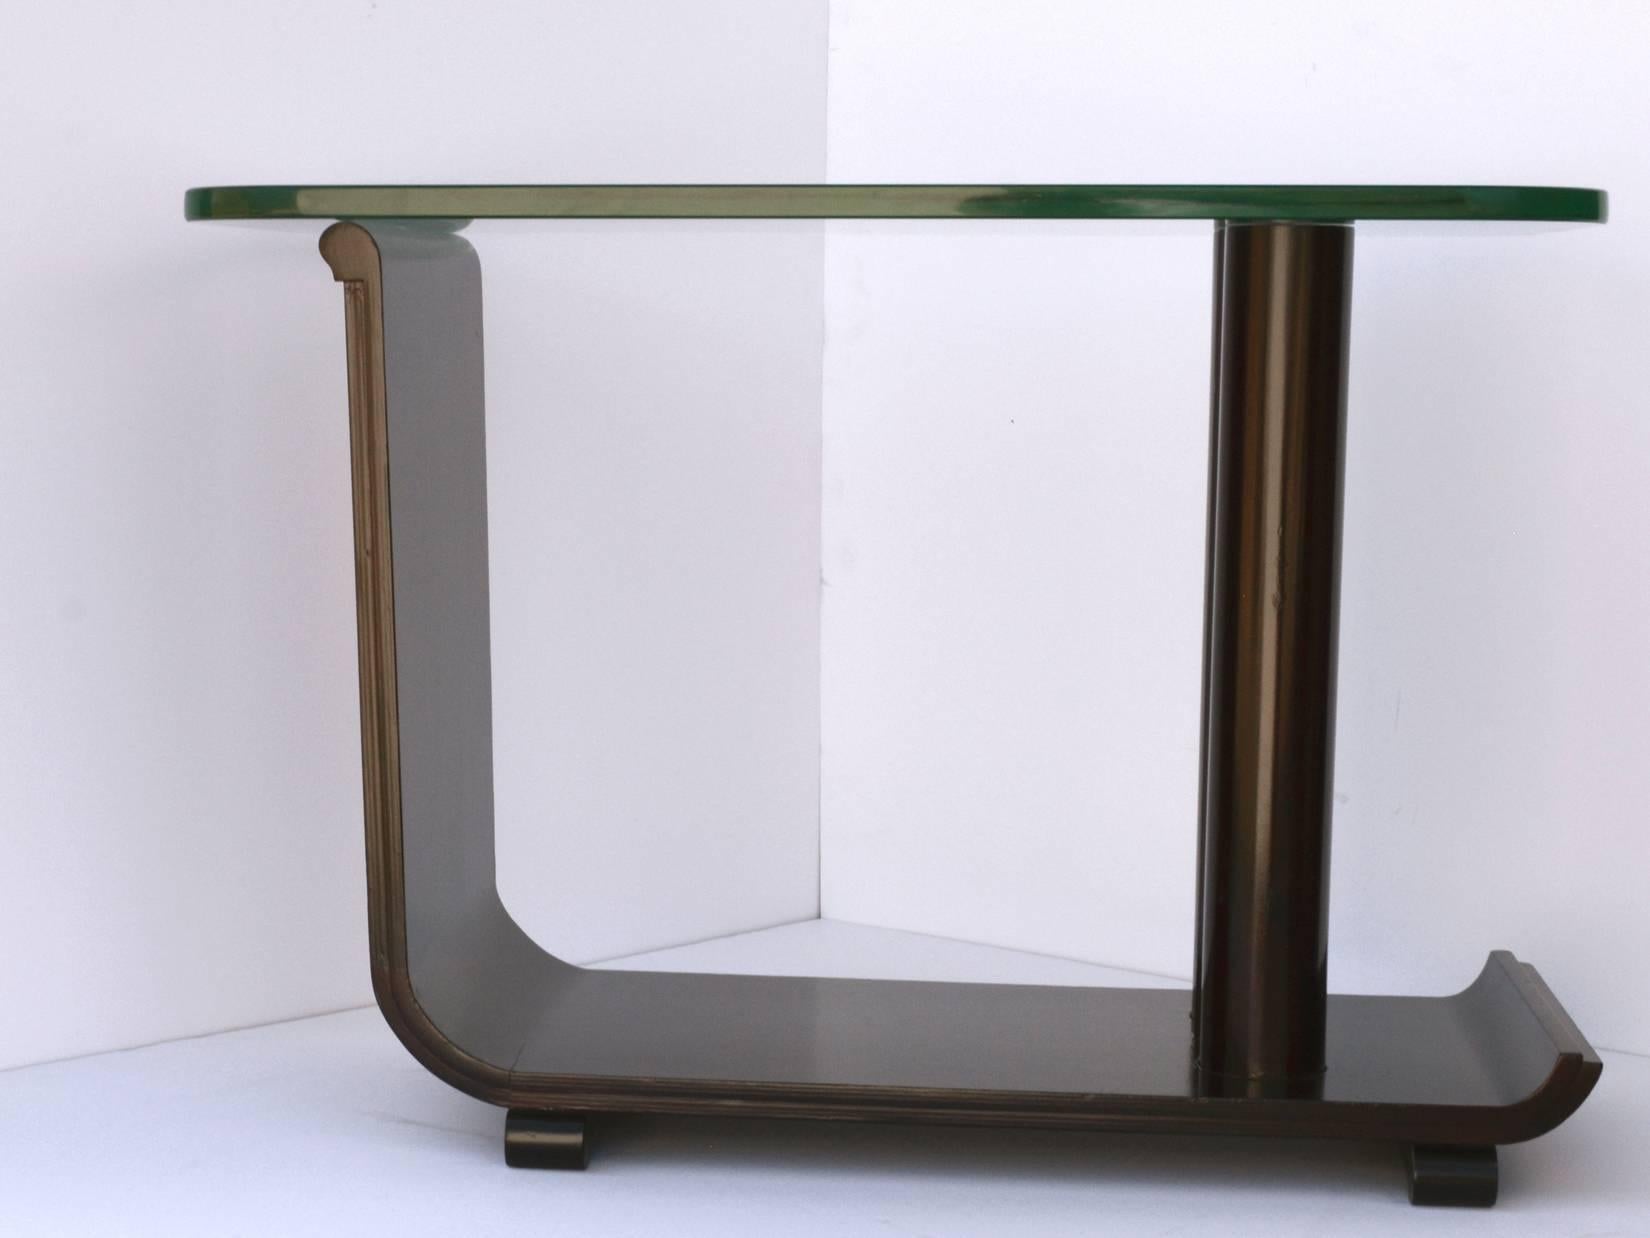 Une table d'appoint sculpturale en faux bois grainé. Le support en forme de colonne repose sur une base plate avec des bords en escalier qui s'incurvent pour soutenir le plateau en verre. La base repose sur des pieds arrondis. Plateau en verre